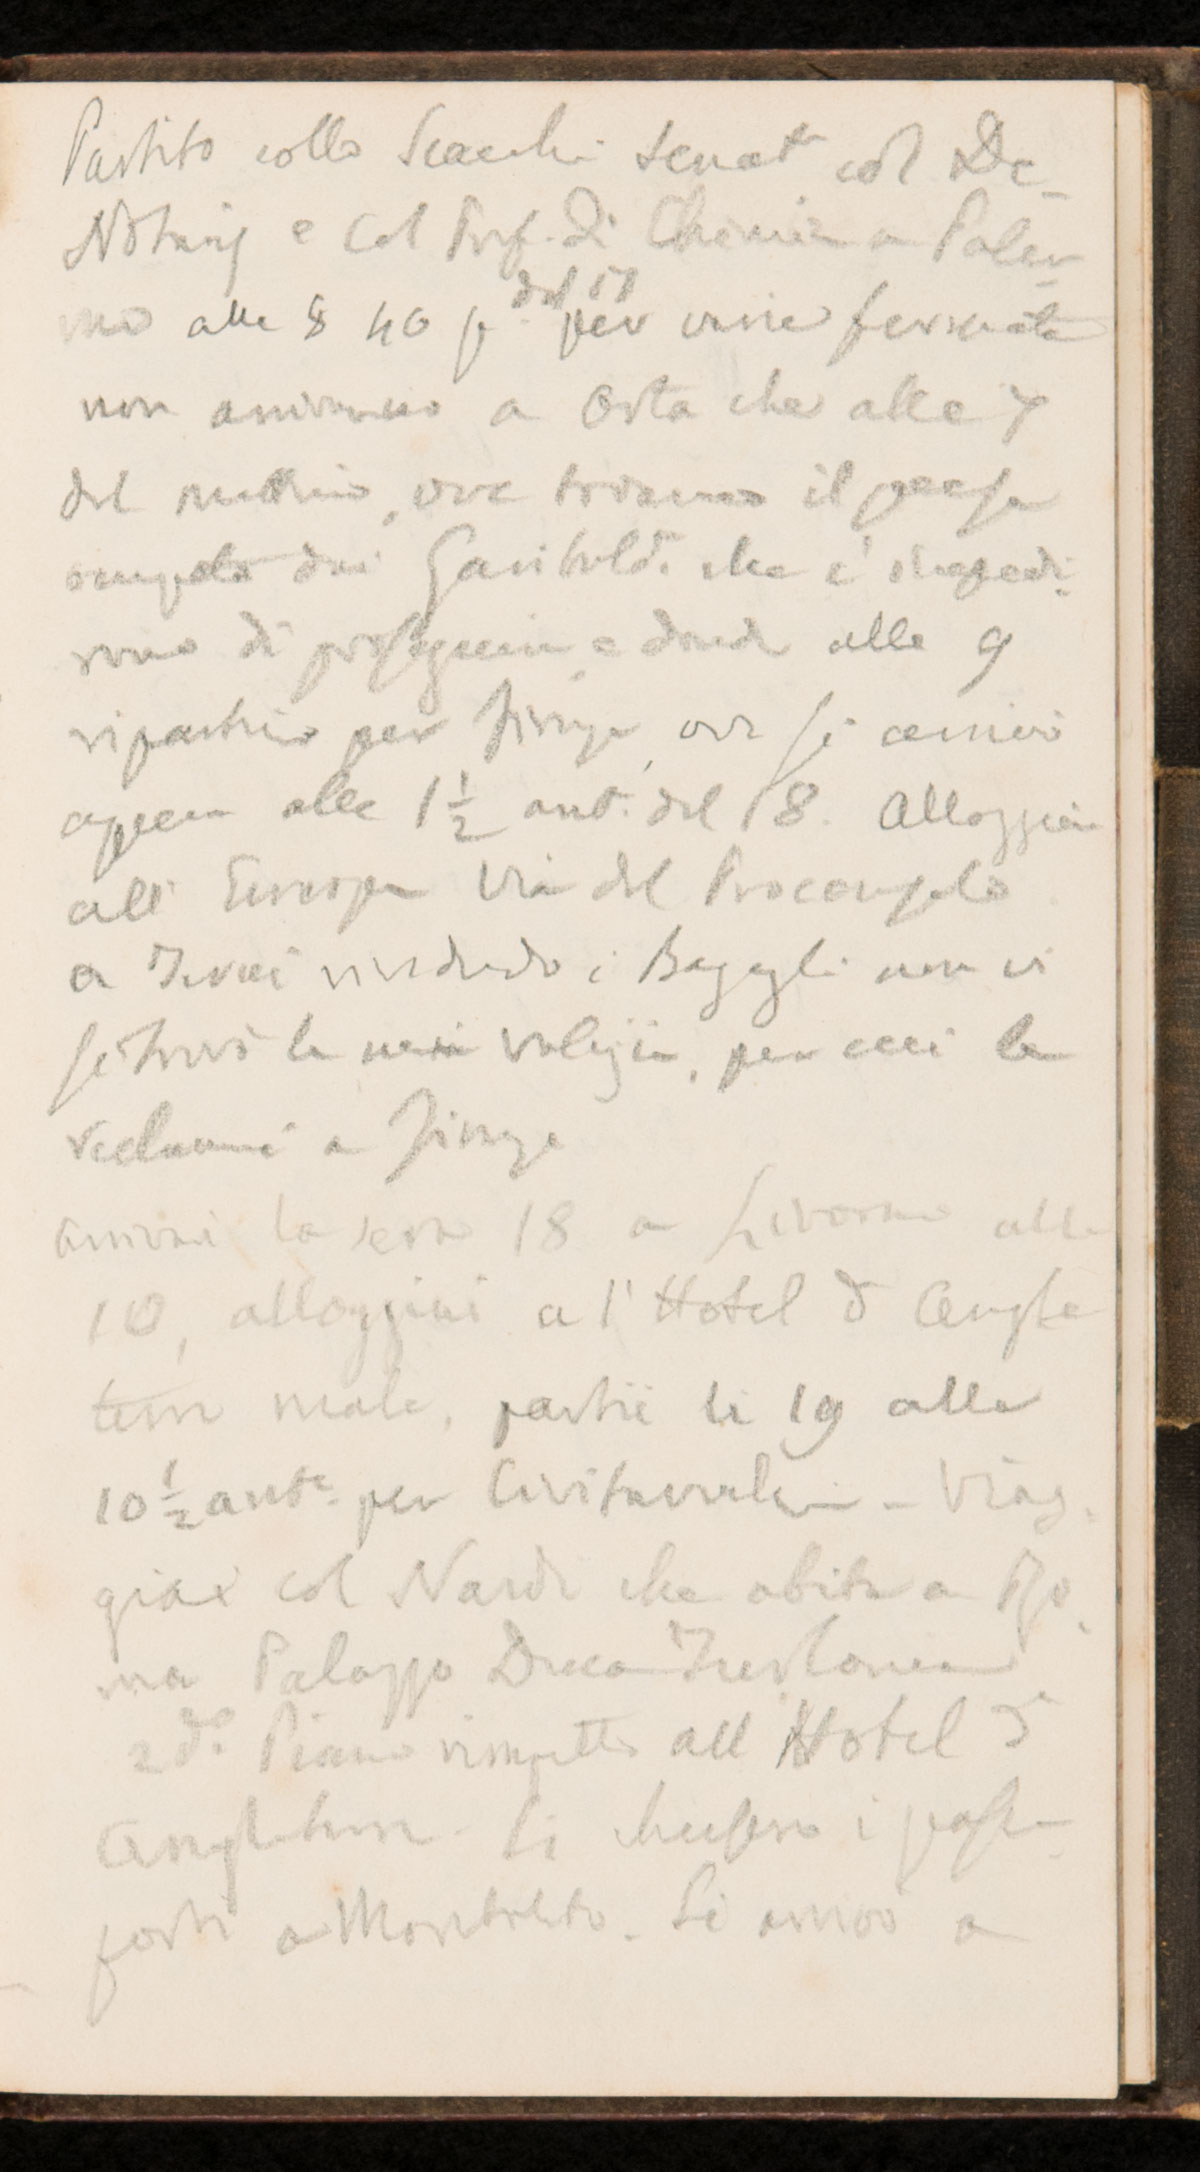 Pagina del taccuino sul viaggio del 1867